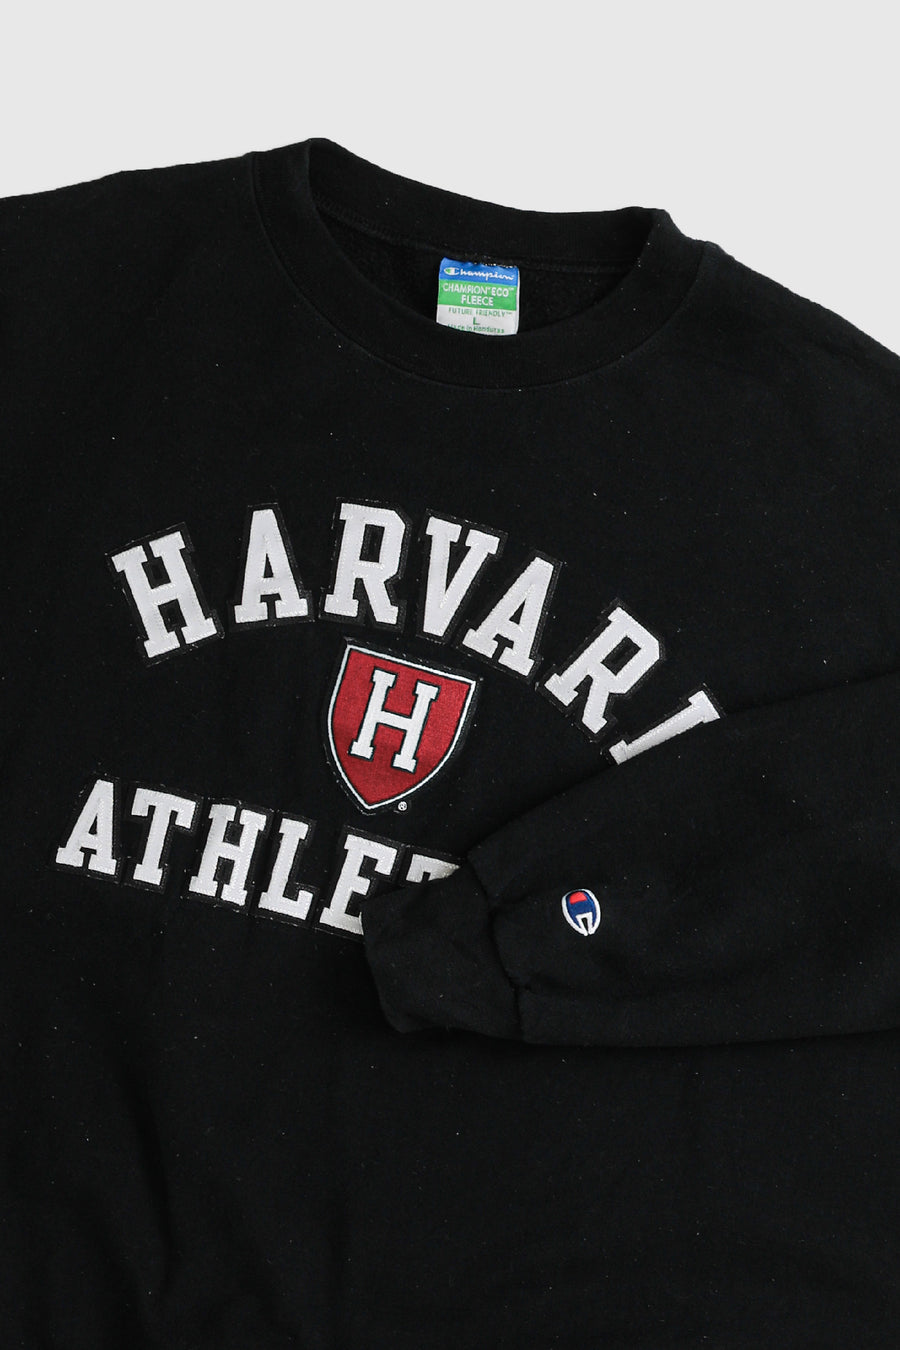 Vintage Harvard Sweatshirt